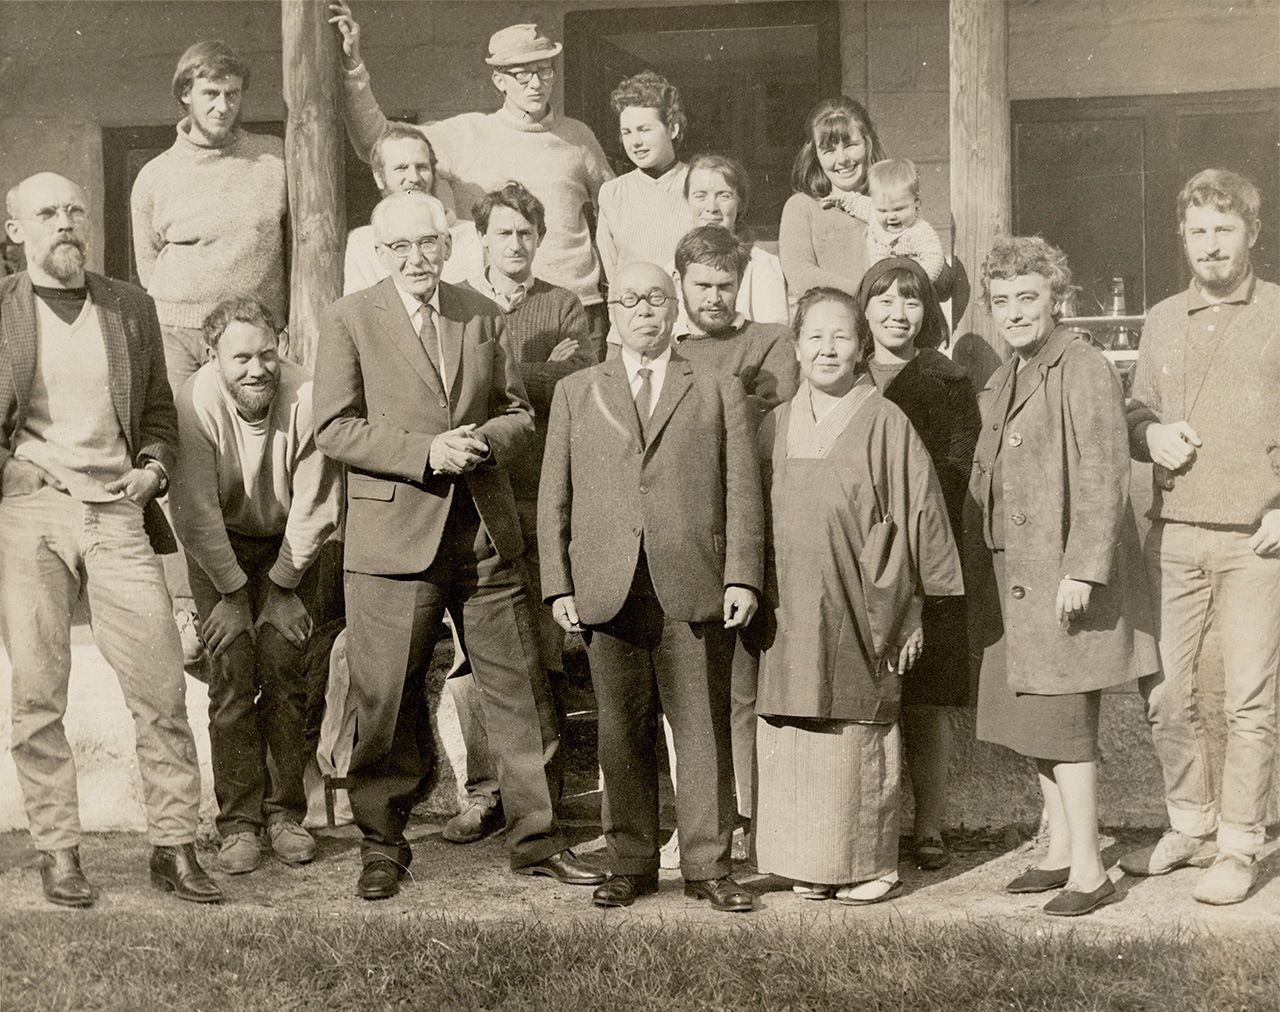 برنارد ليتش (الثالث من اليسار، في الأمام) وهامادا شوجي (في الوسط، بجانبه) في ورشة ليتش لصناعة الخزف مع موظفي المنشأة، 1960 (إهداء من مركز دراسة المصنوعات اليدوية)